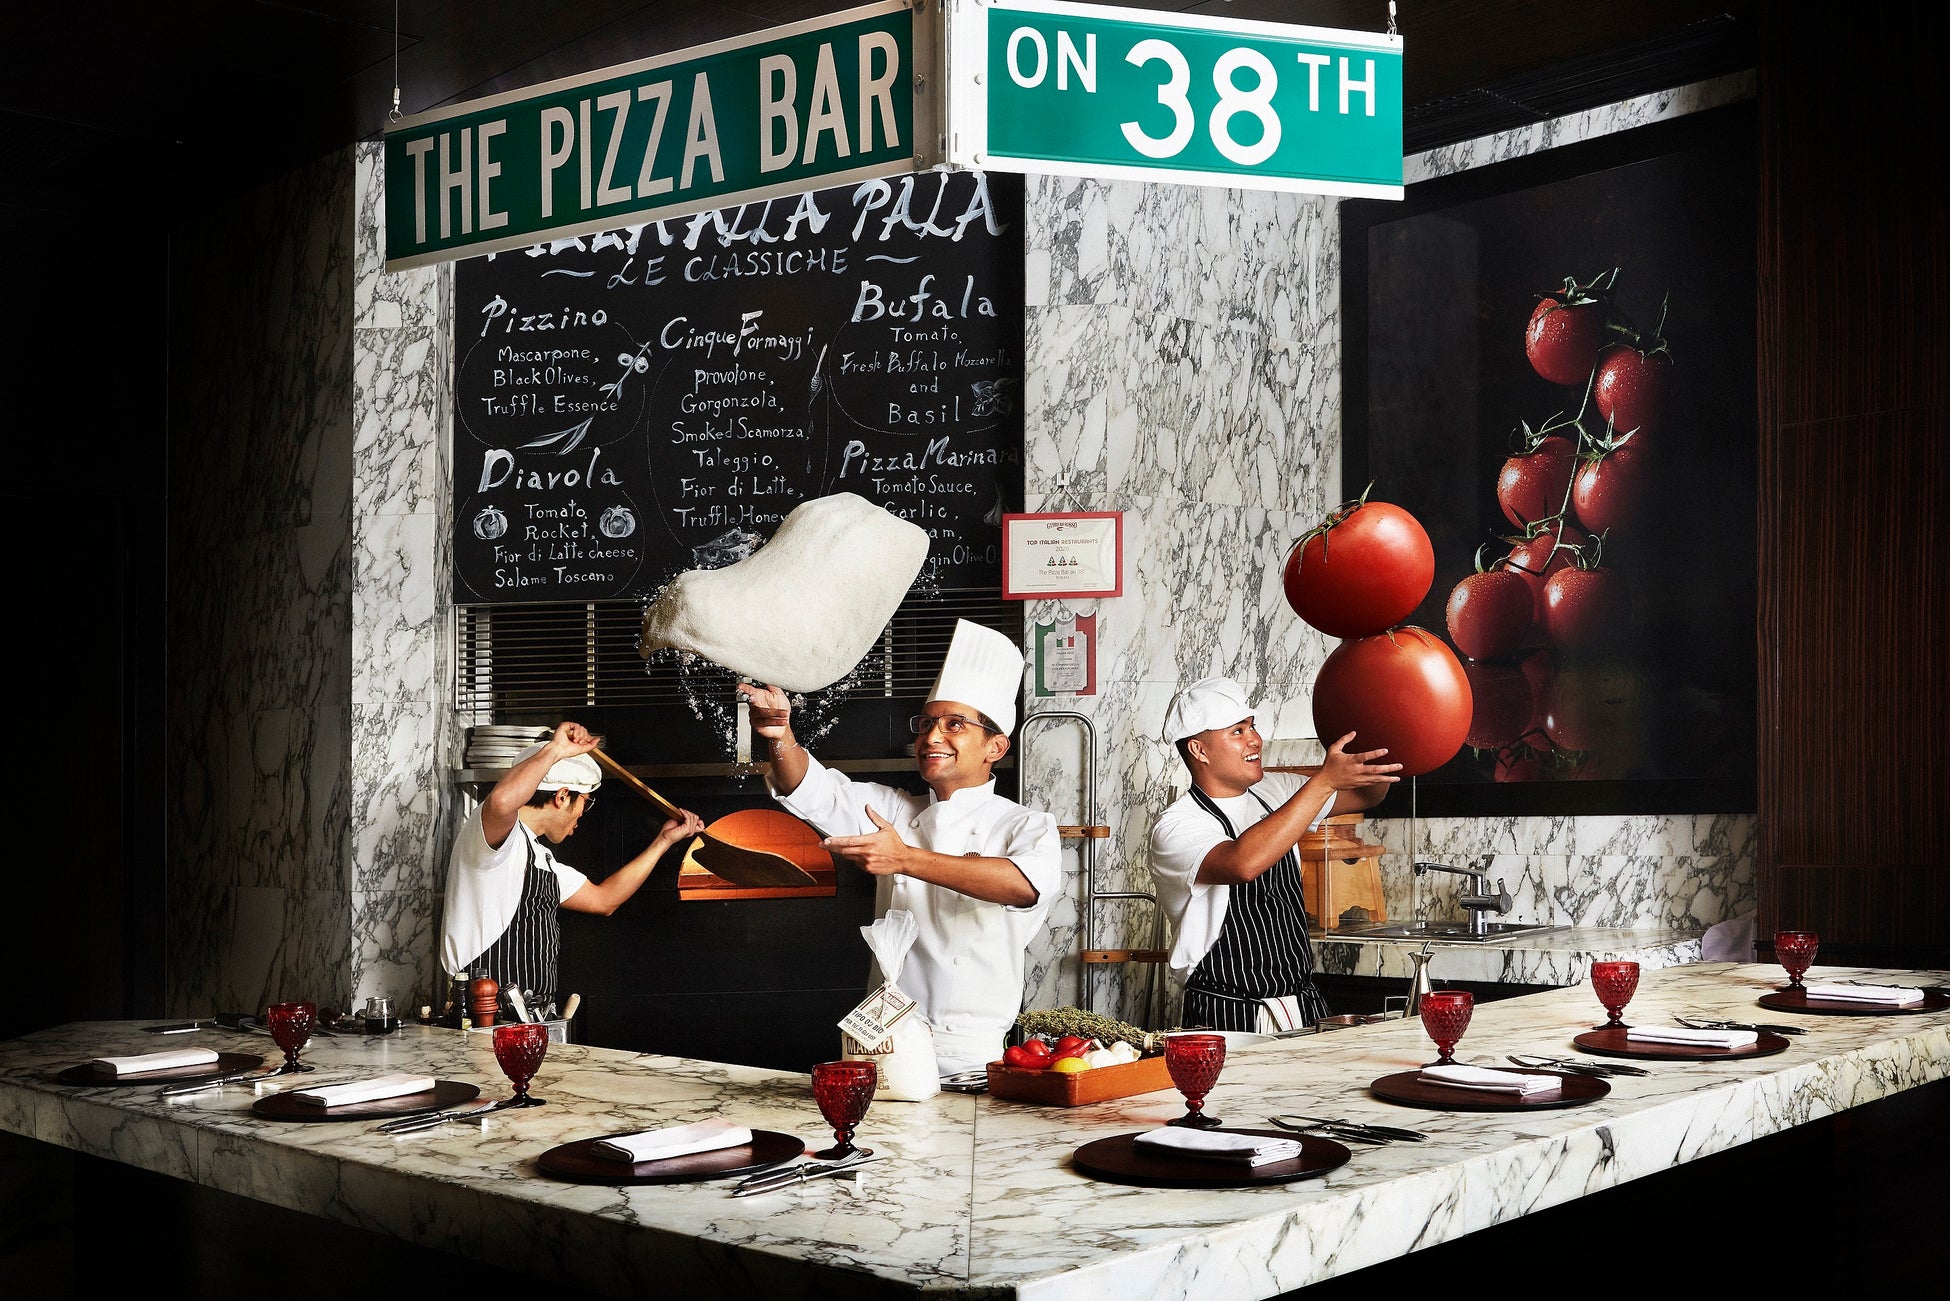 【マンダリン オリエンタル 東京】ピッツァ分野で最も影響力のあるガイド 『50 Top Pizza』アジア地域のランキングで3位、日本で1位の評価を獲得